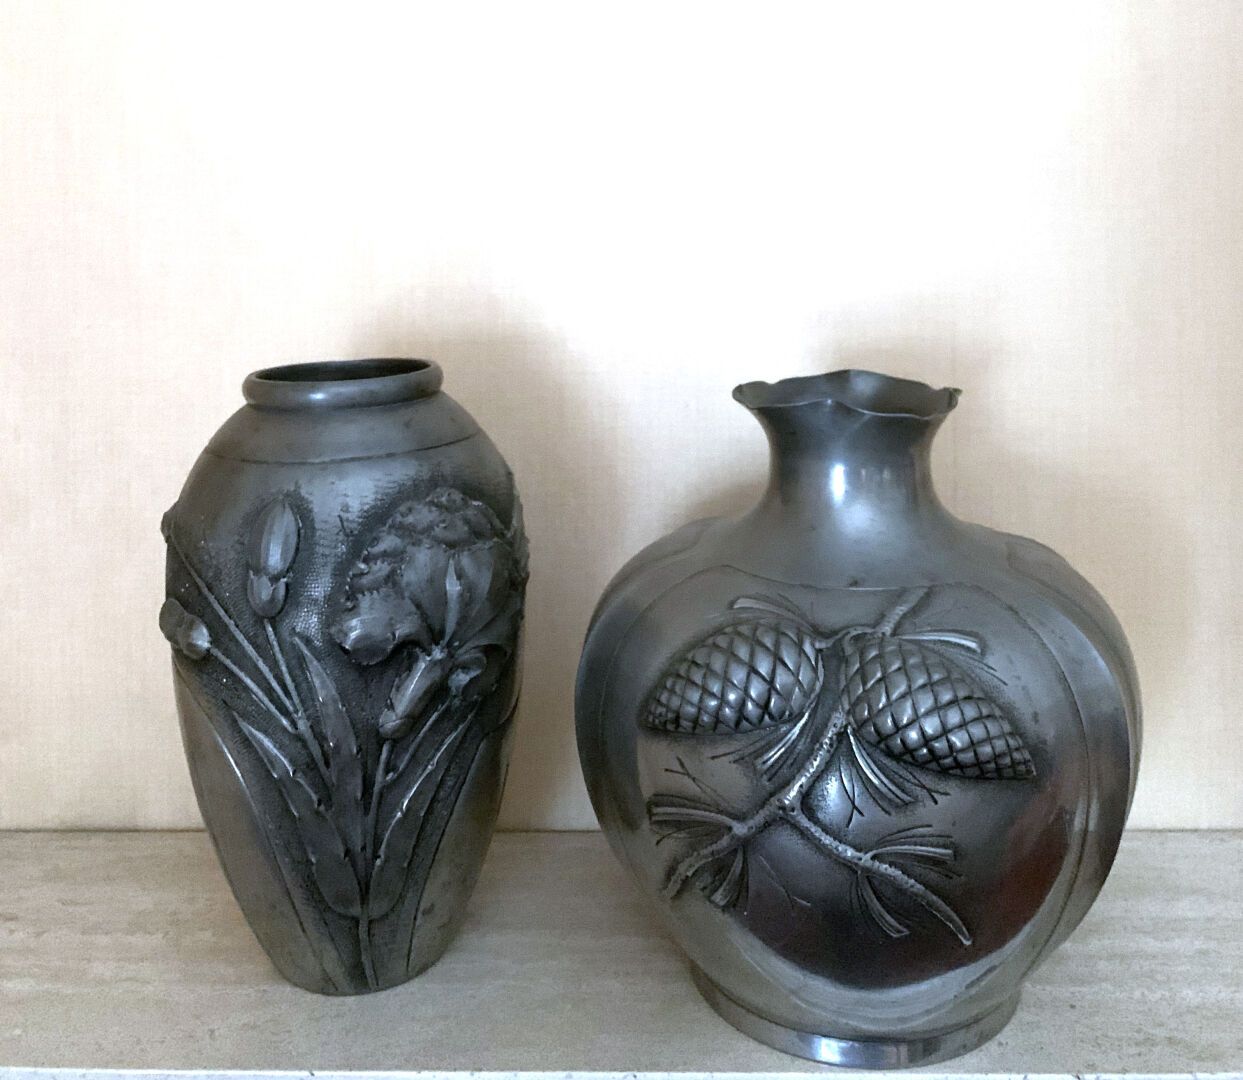 Null 一套两个锡制花瓶，一个是卵形的，颈部有环形的，浮雕有一束鸢尾花，另一个是石榴形状的，浮雕有松果。
1930年代的作品
H.27和26厘米